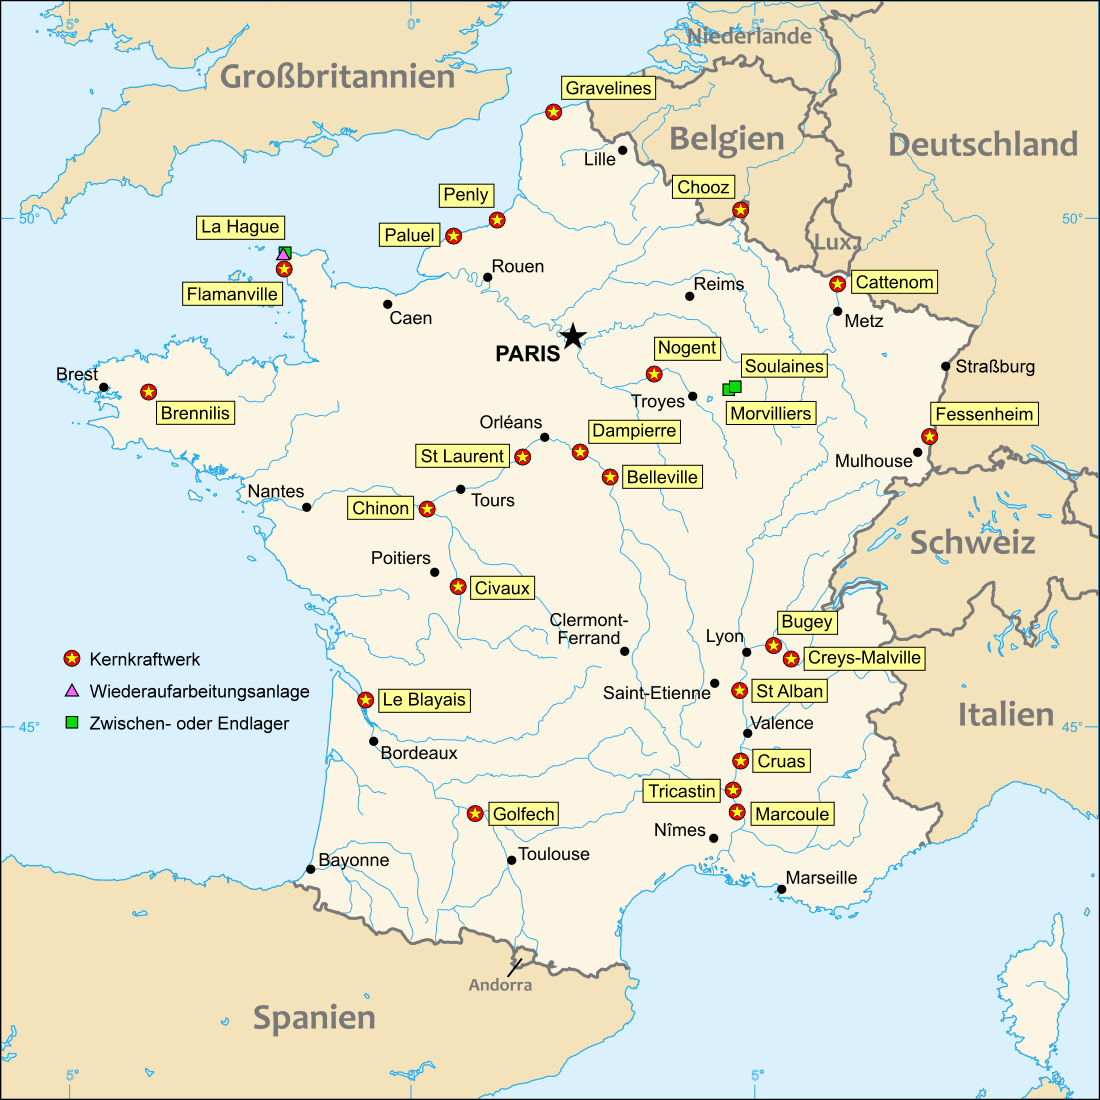 Nuclear_power_plants_map_France-de